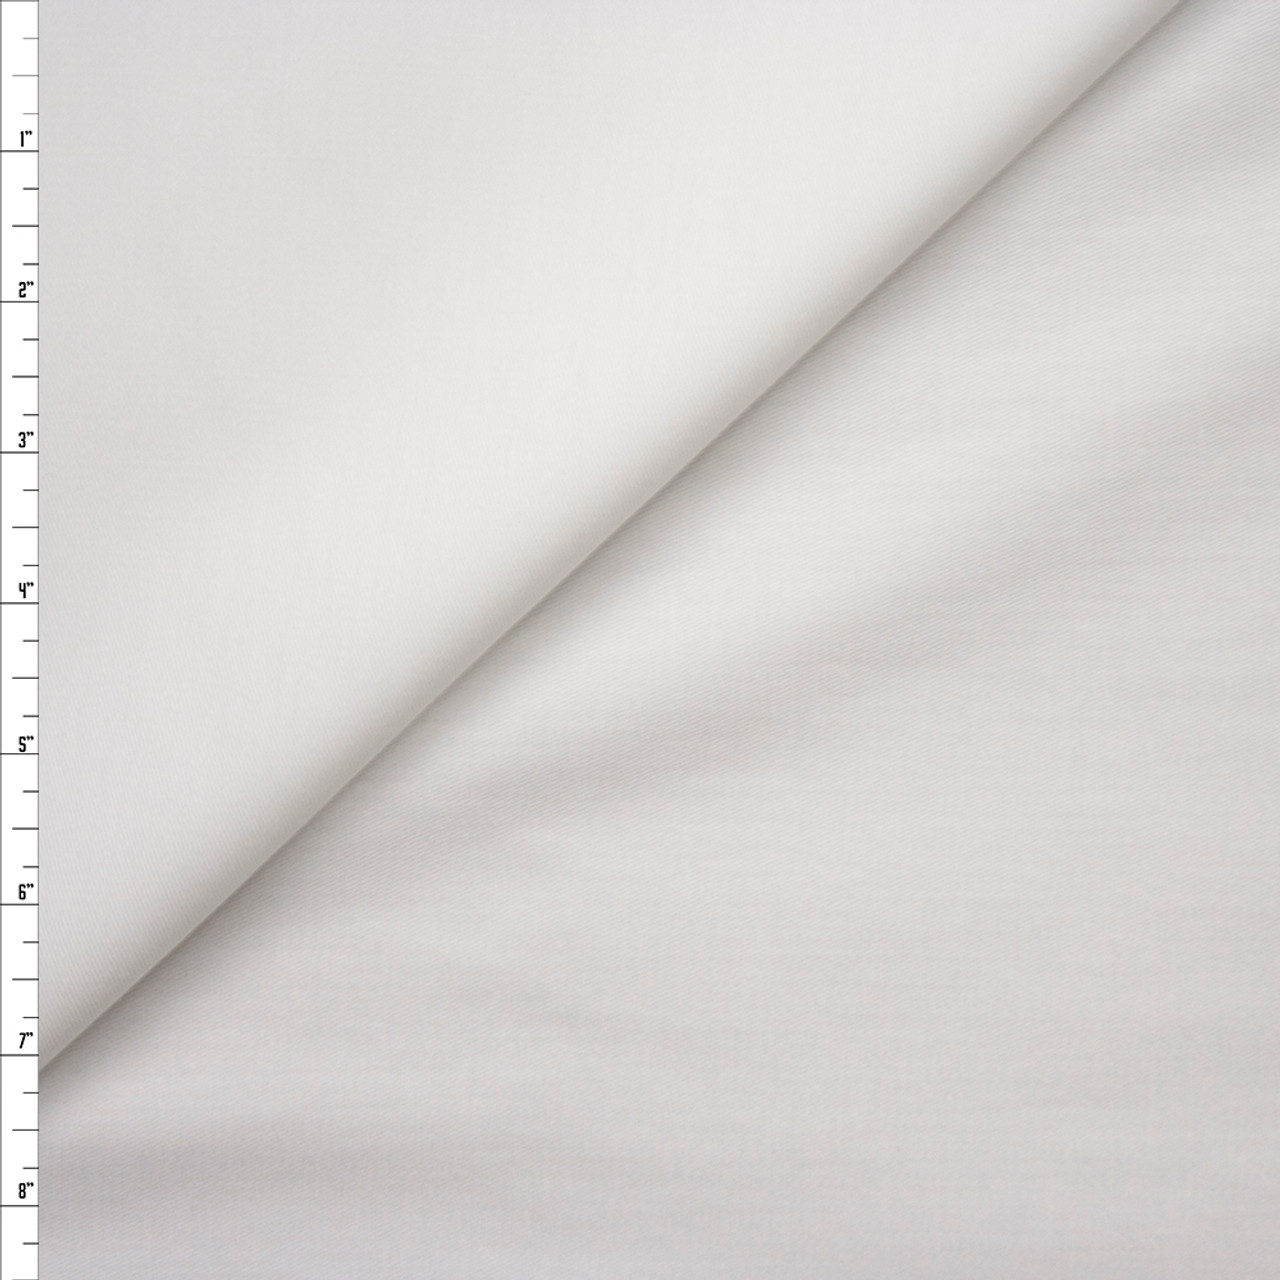 Solid Bright White, Cotton Twill Fabric, 8oz., 100% Cotton, 68 Wide